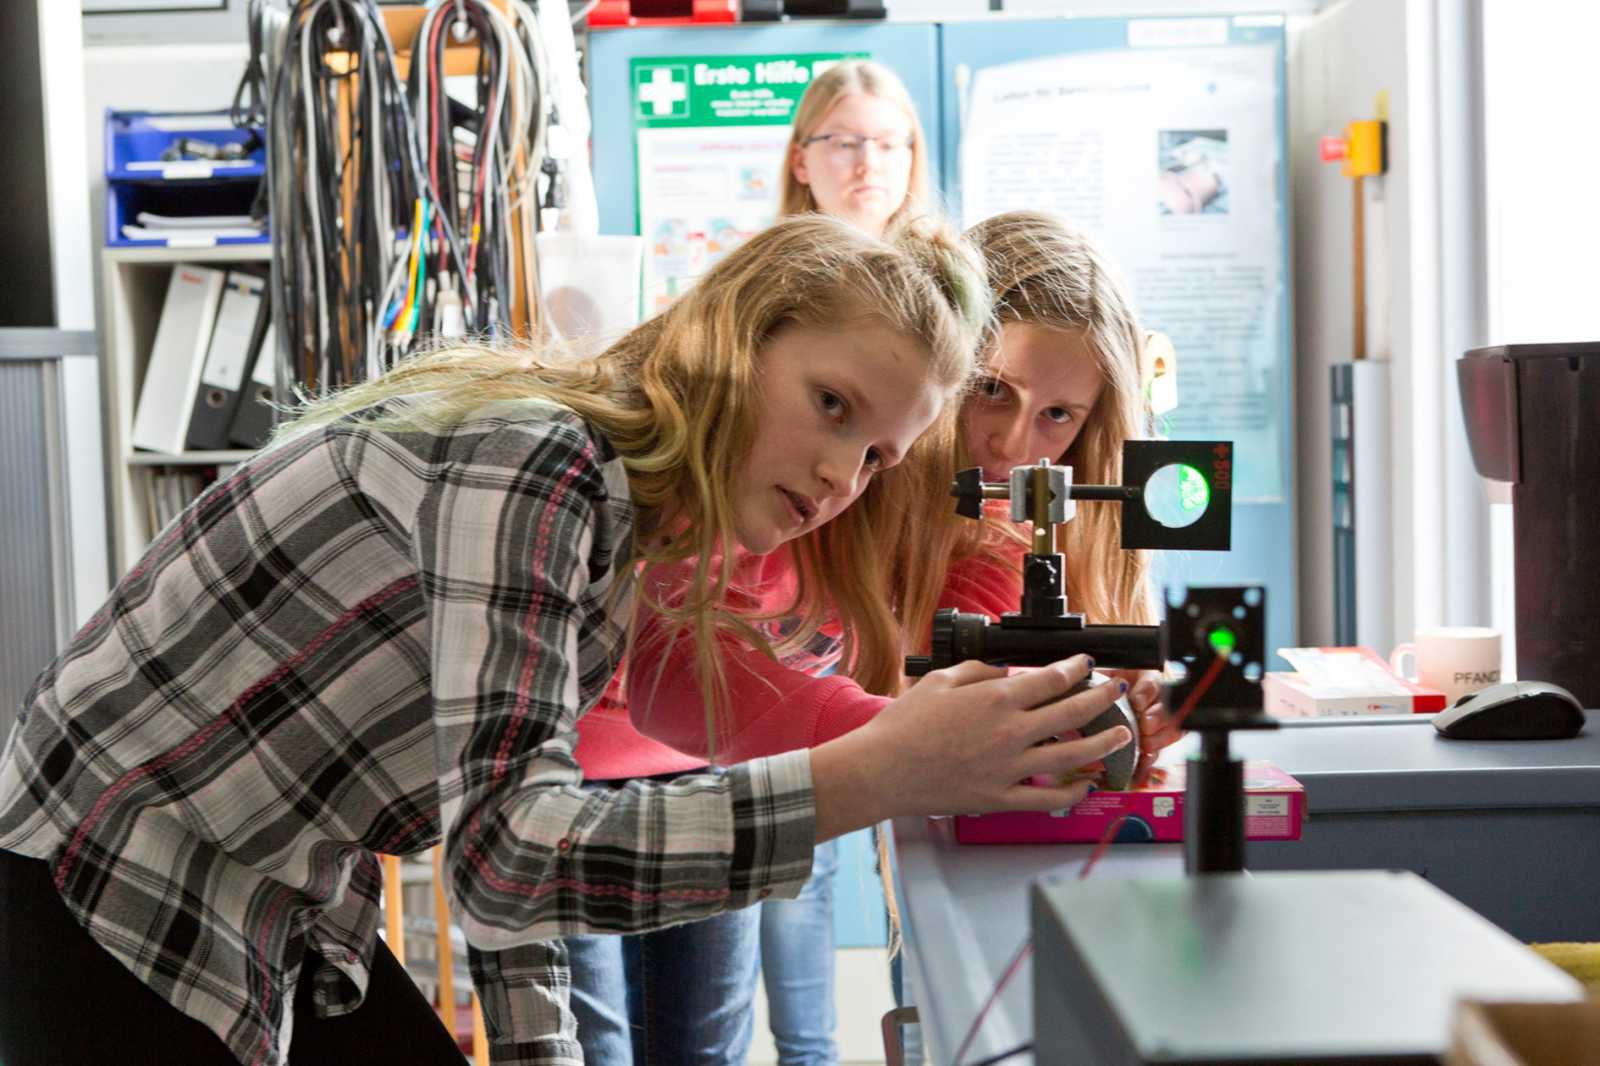 Per Laserstrahl Informationen wie Musik übertragen, das können Schülerinnen und Schüler beim Schülercampus ausprobieren. (Foto: FH Münster/Ralf Emmerich)